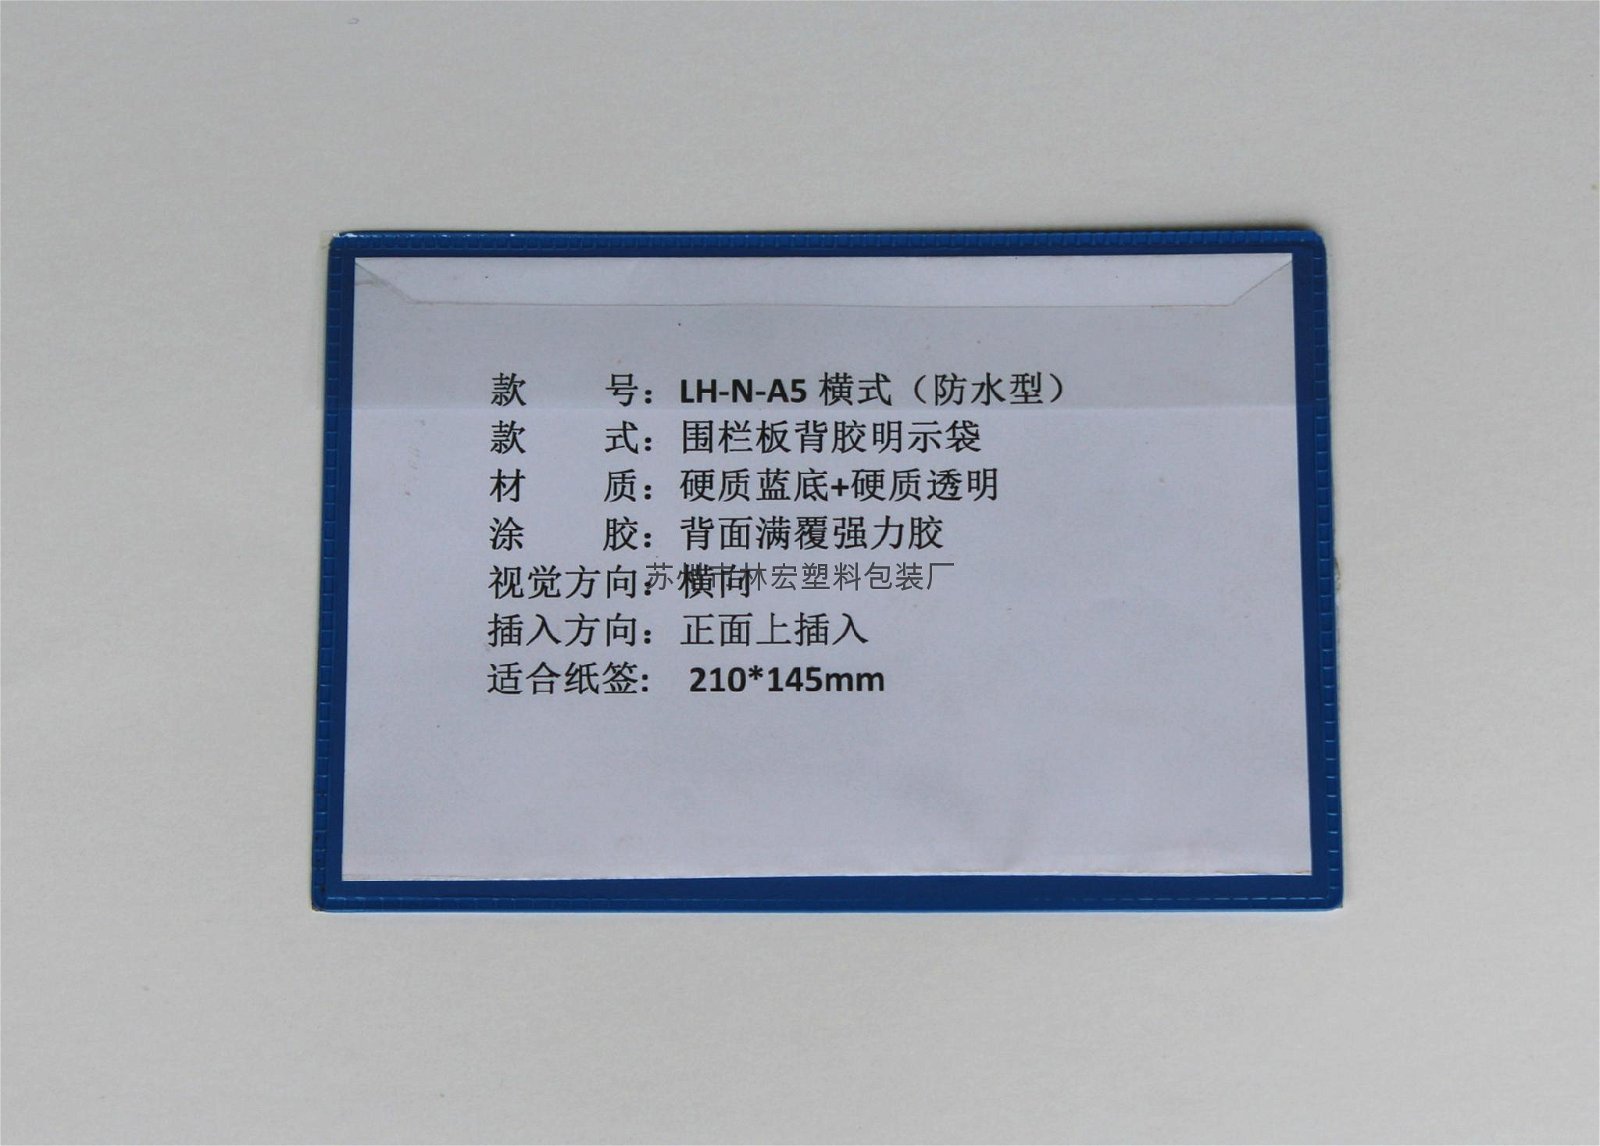 蘇州林宏專業生產圍板箱文件袋 2